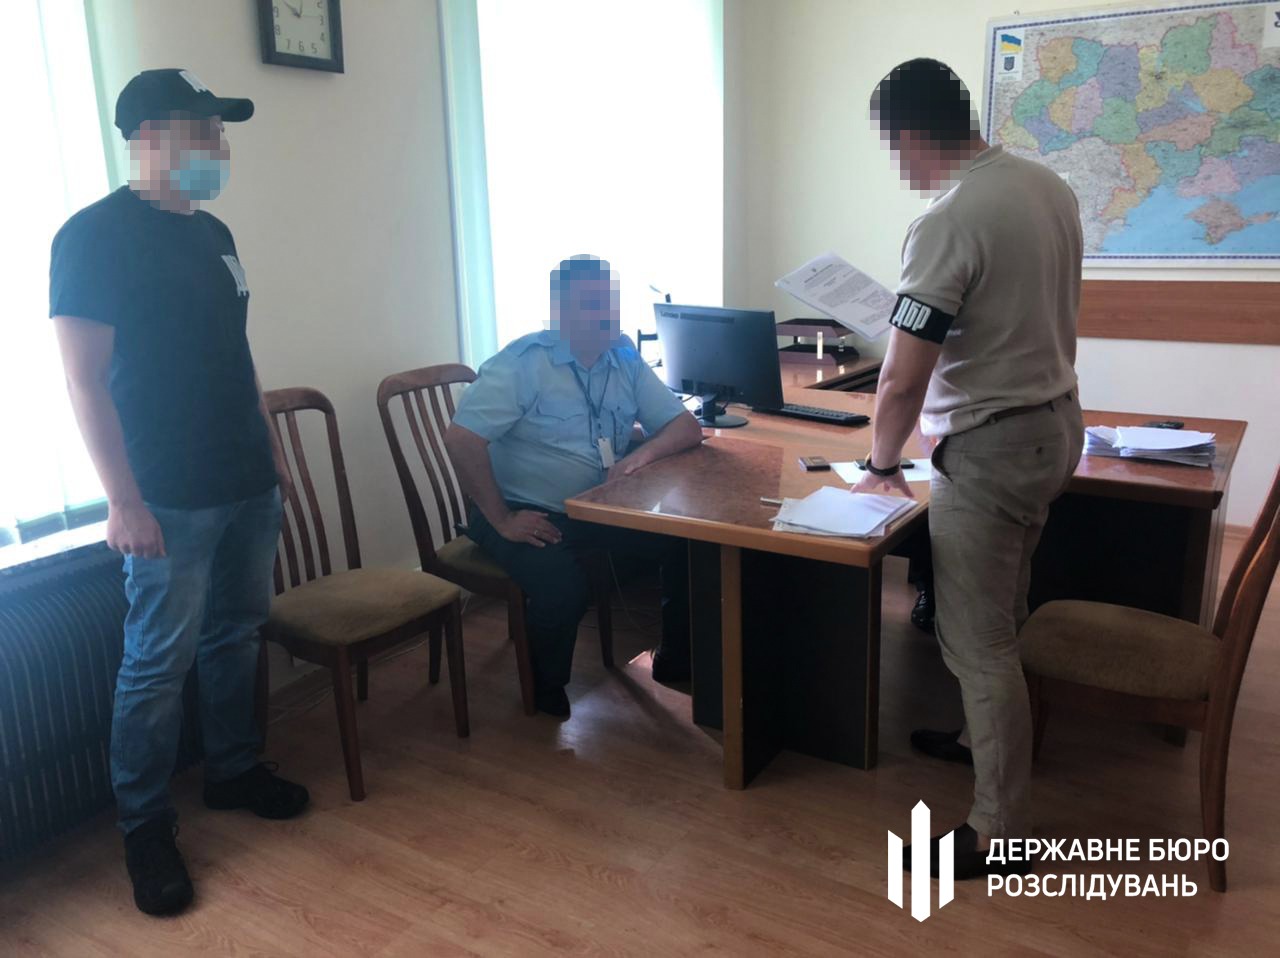 Работники таможенного поста “Борисполь”, допустившие нанесение ущерба государству на 7,6 млн.гривен, предстанут перед судом